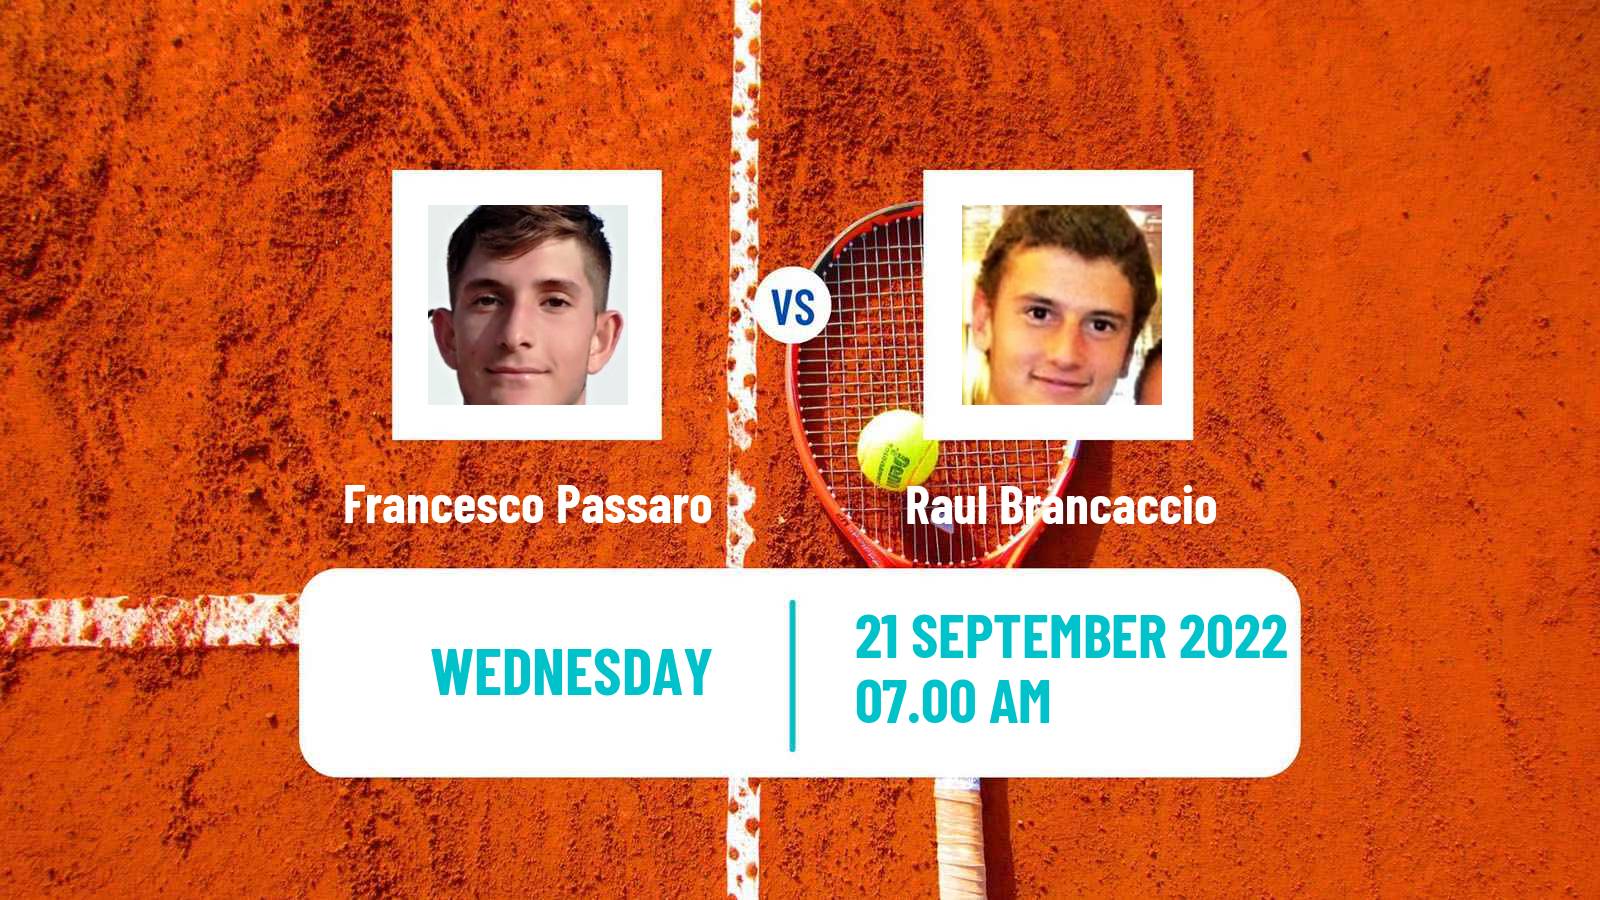 Tennis ATP Challenger Francesco Passaro - Raul Brancaccio